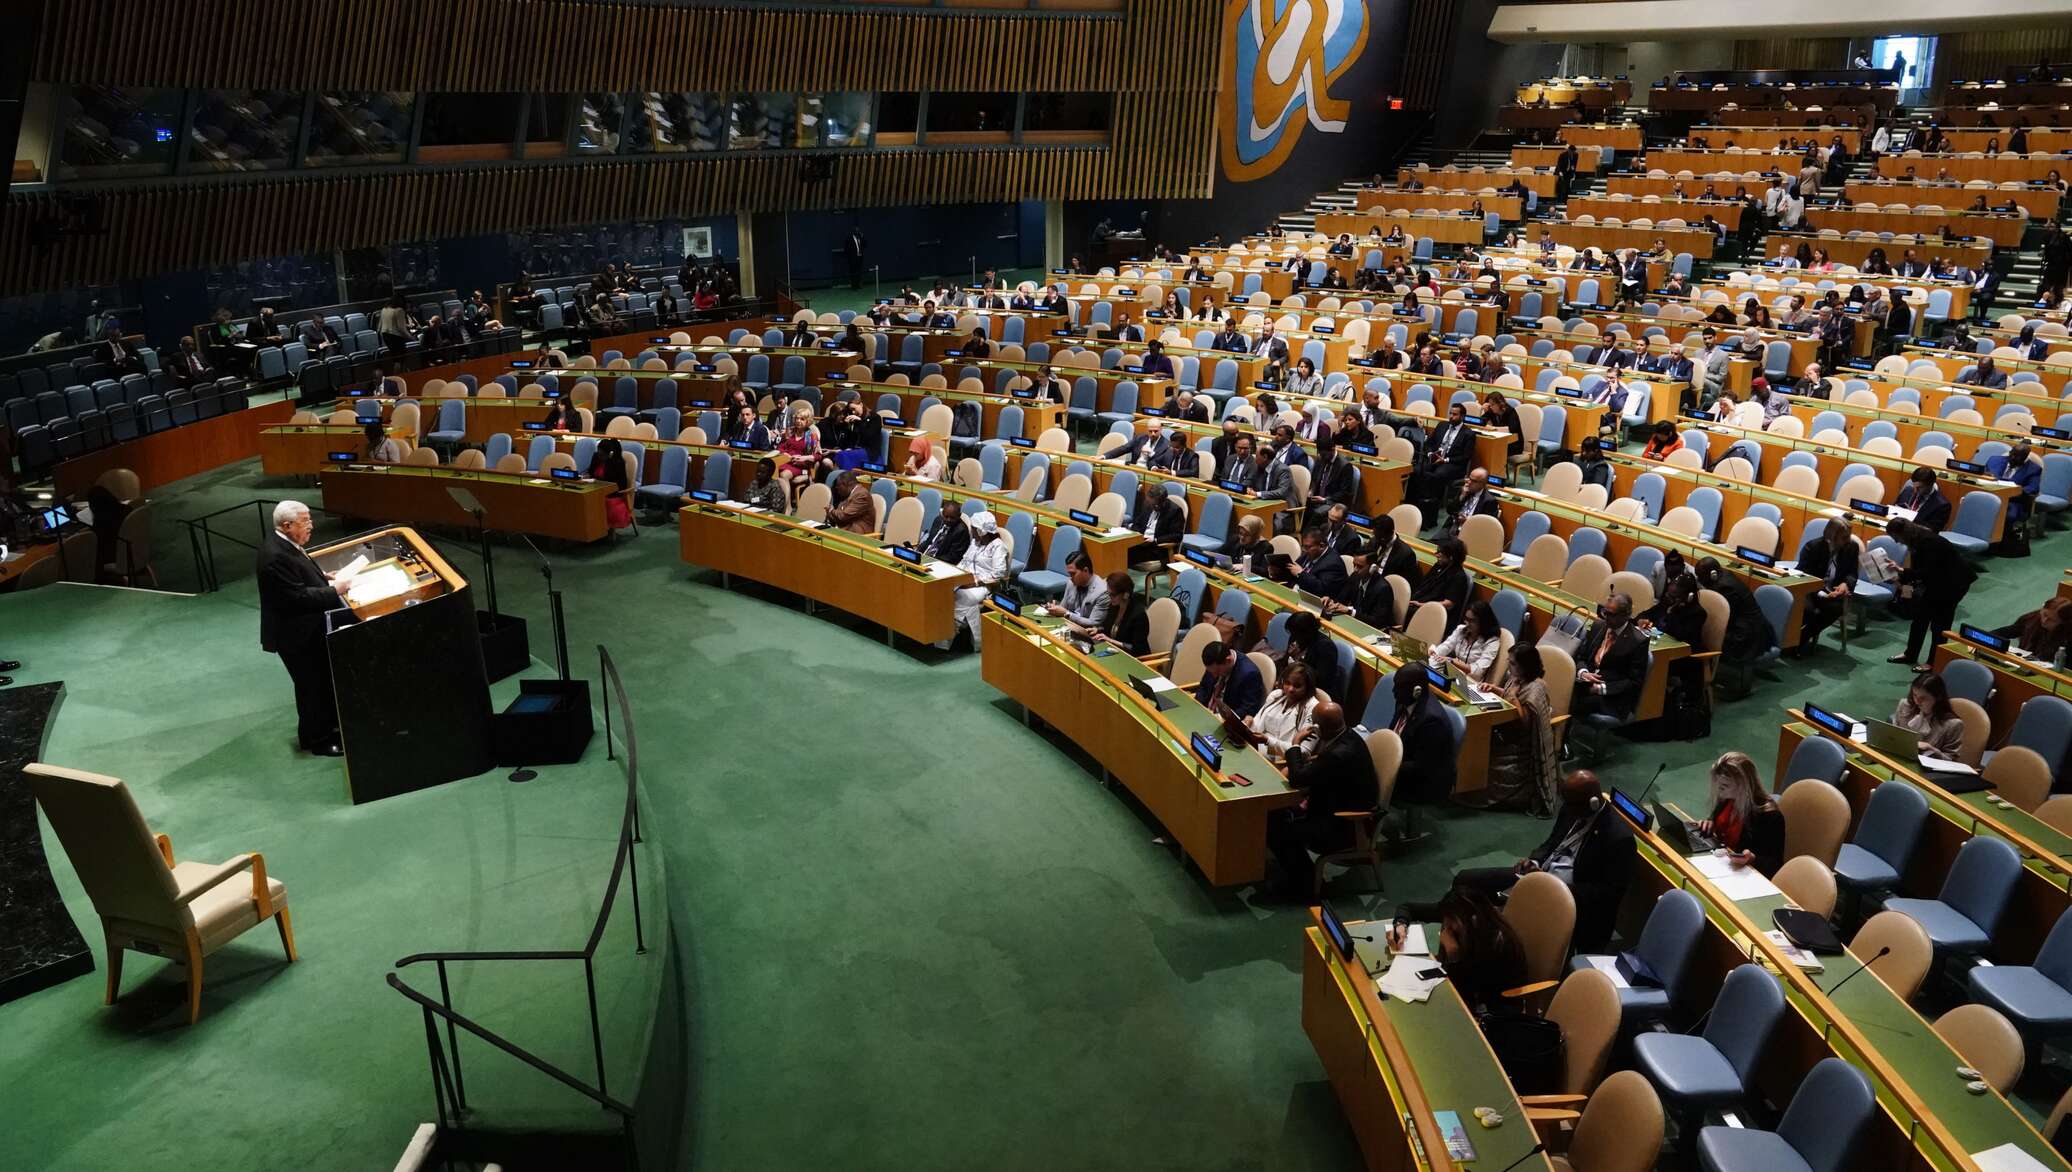 Зал оон. Зал Генеральной Ассамблеи ООН. Зал ООН В Нью-Йорке. Зал заседаний ООН Нью Йорк. Генеральная Ассамблея воз.